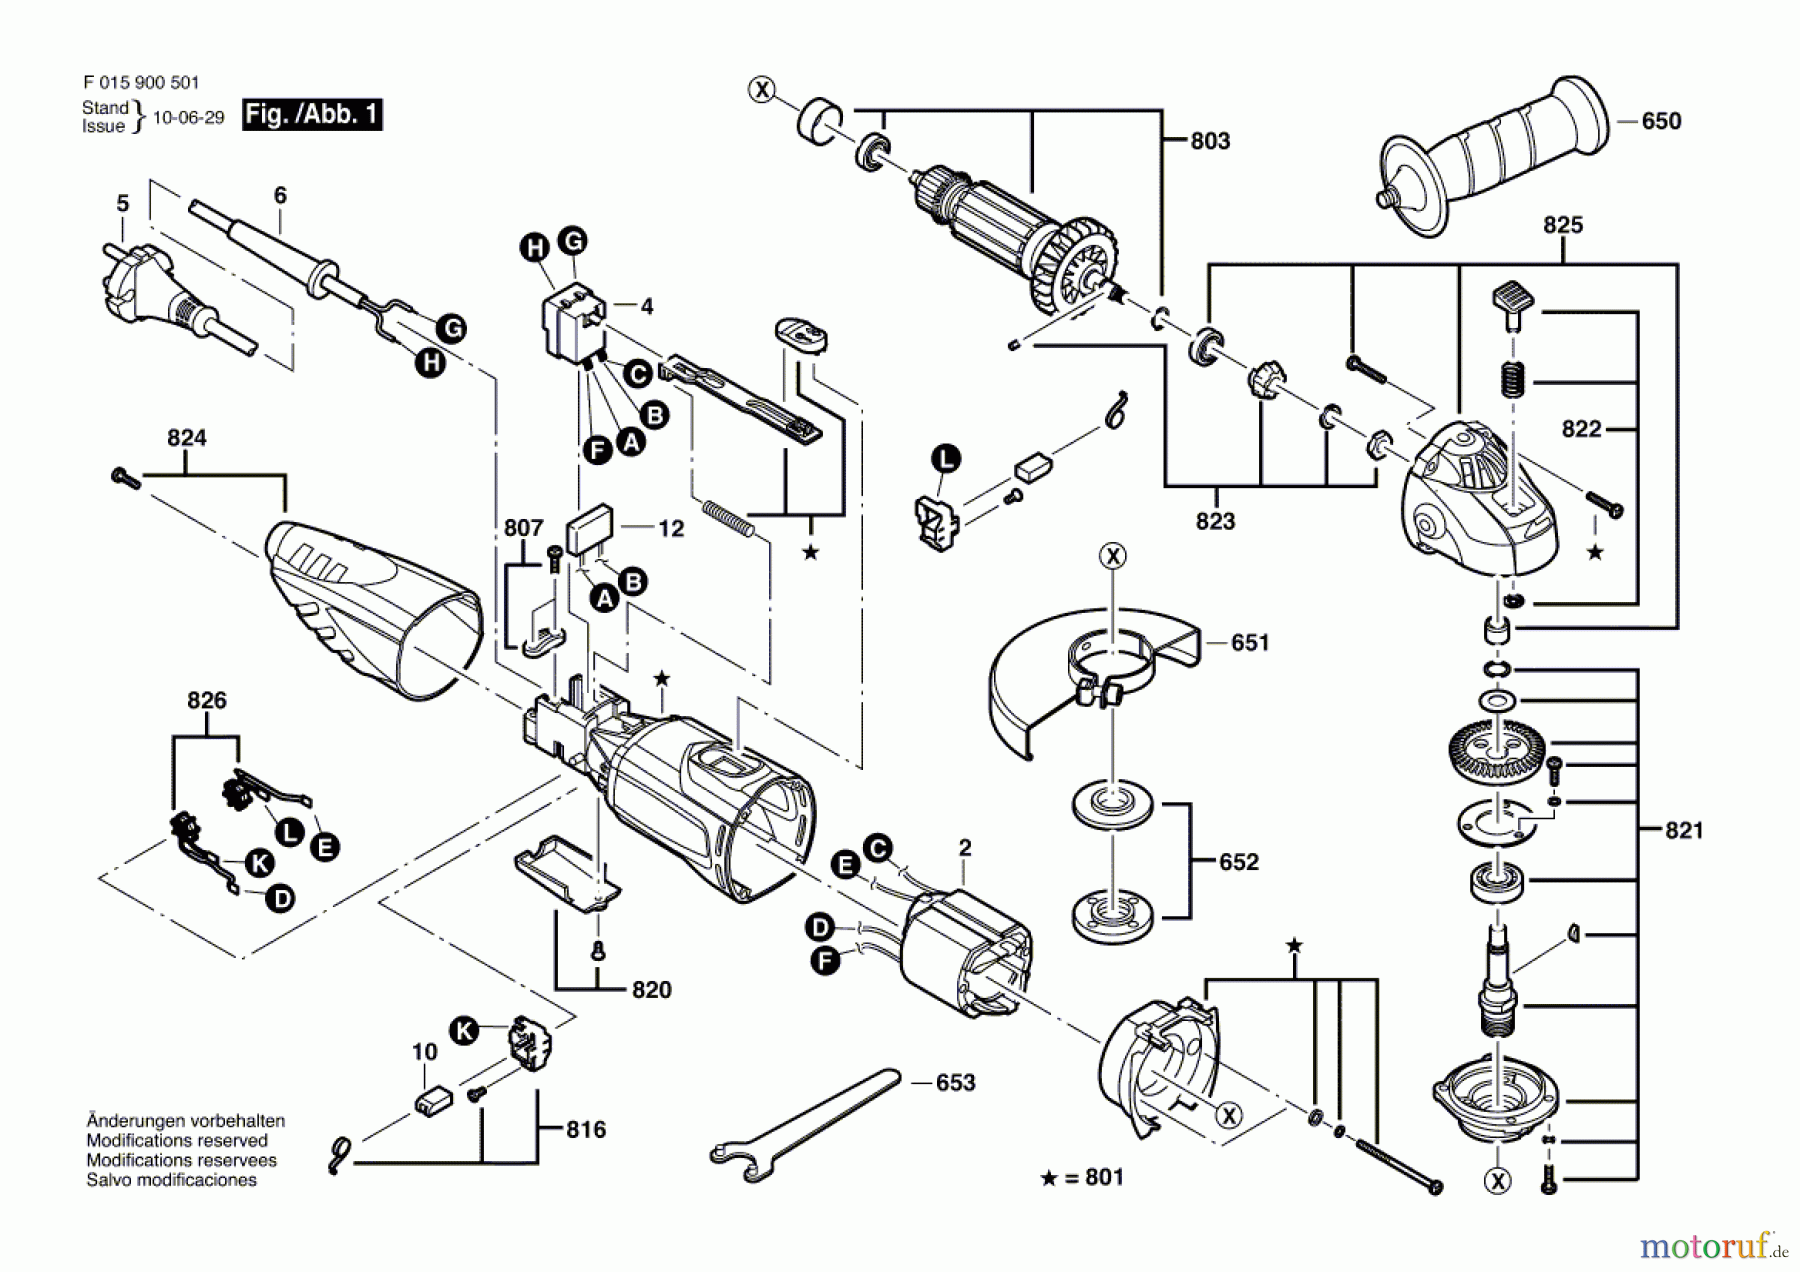  Bosch Werkzeug Winkelschleifer 9030 Seite 1